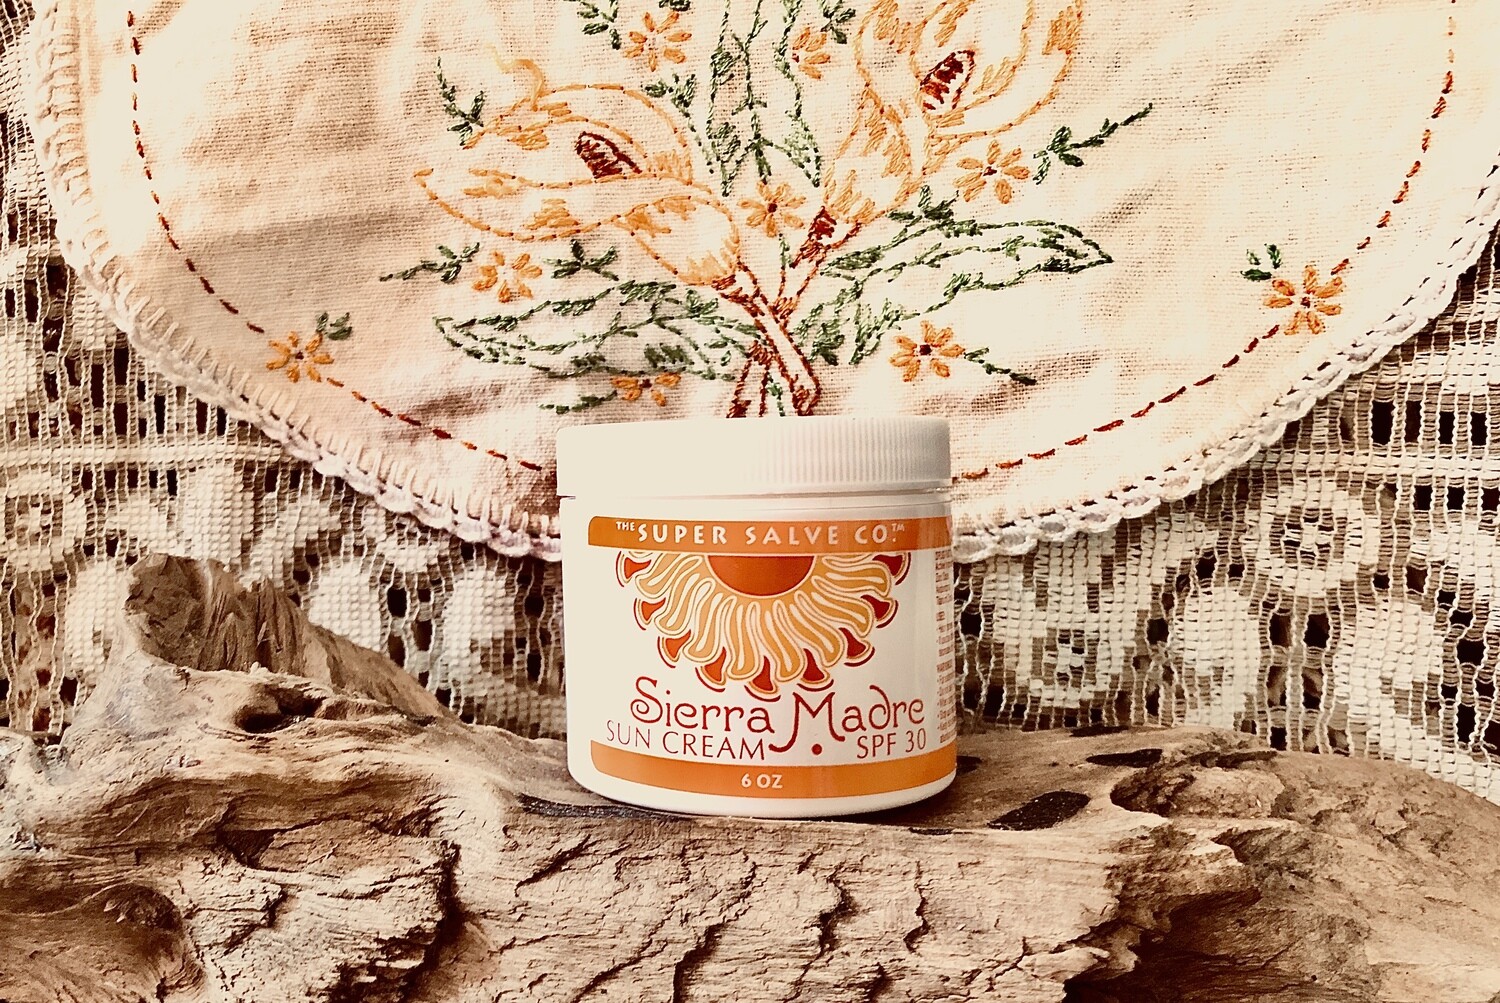 Sierra Madre Sun Cream SPF 30 by Super Salve 6 oz.